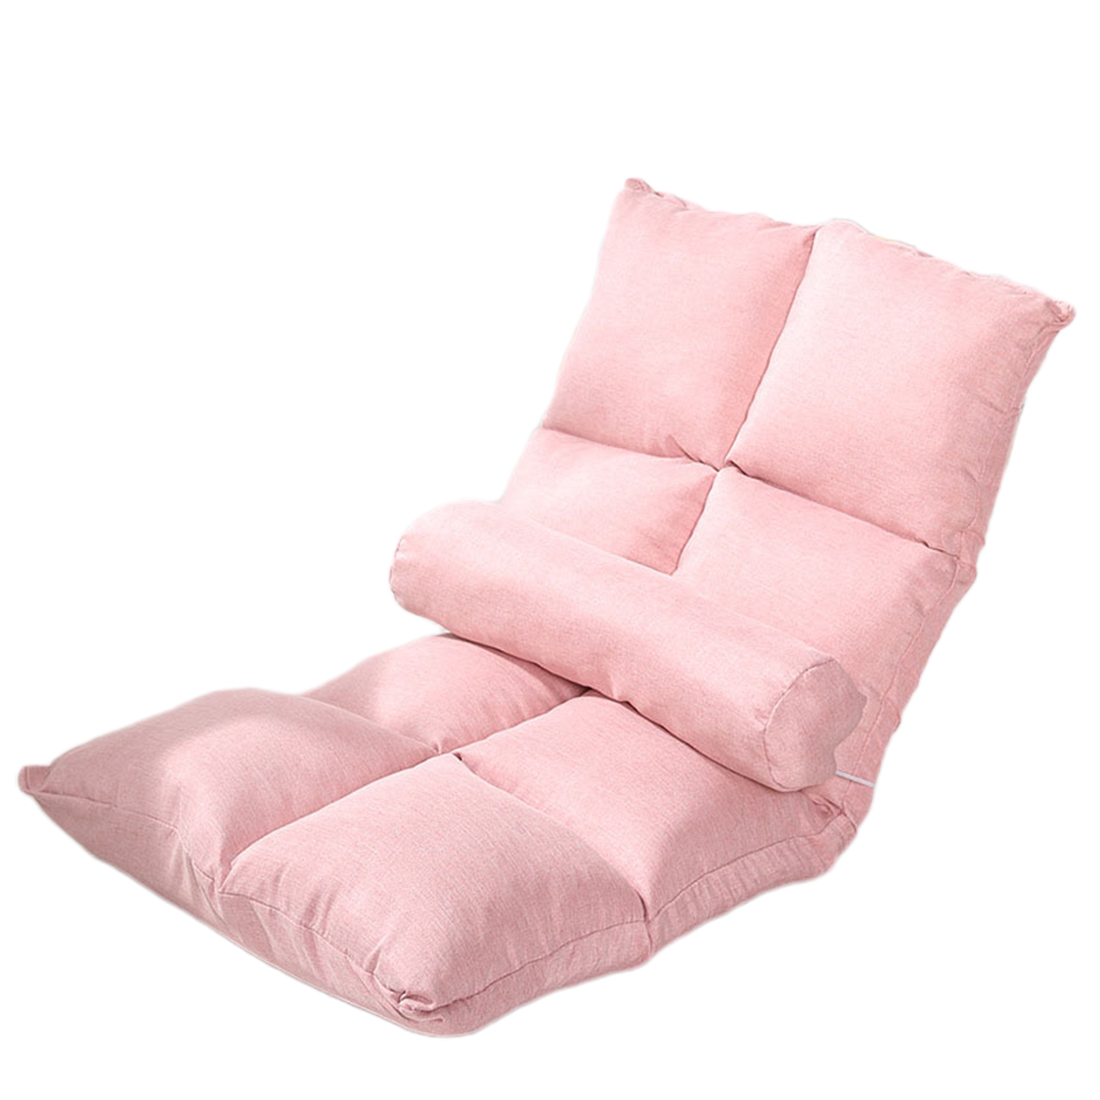 8 plaid linen cherry blossom powder ( send waist pillow )